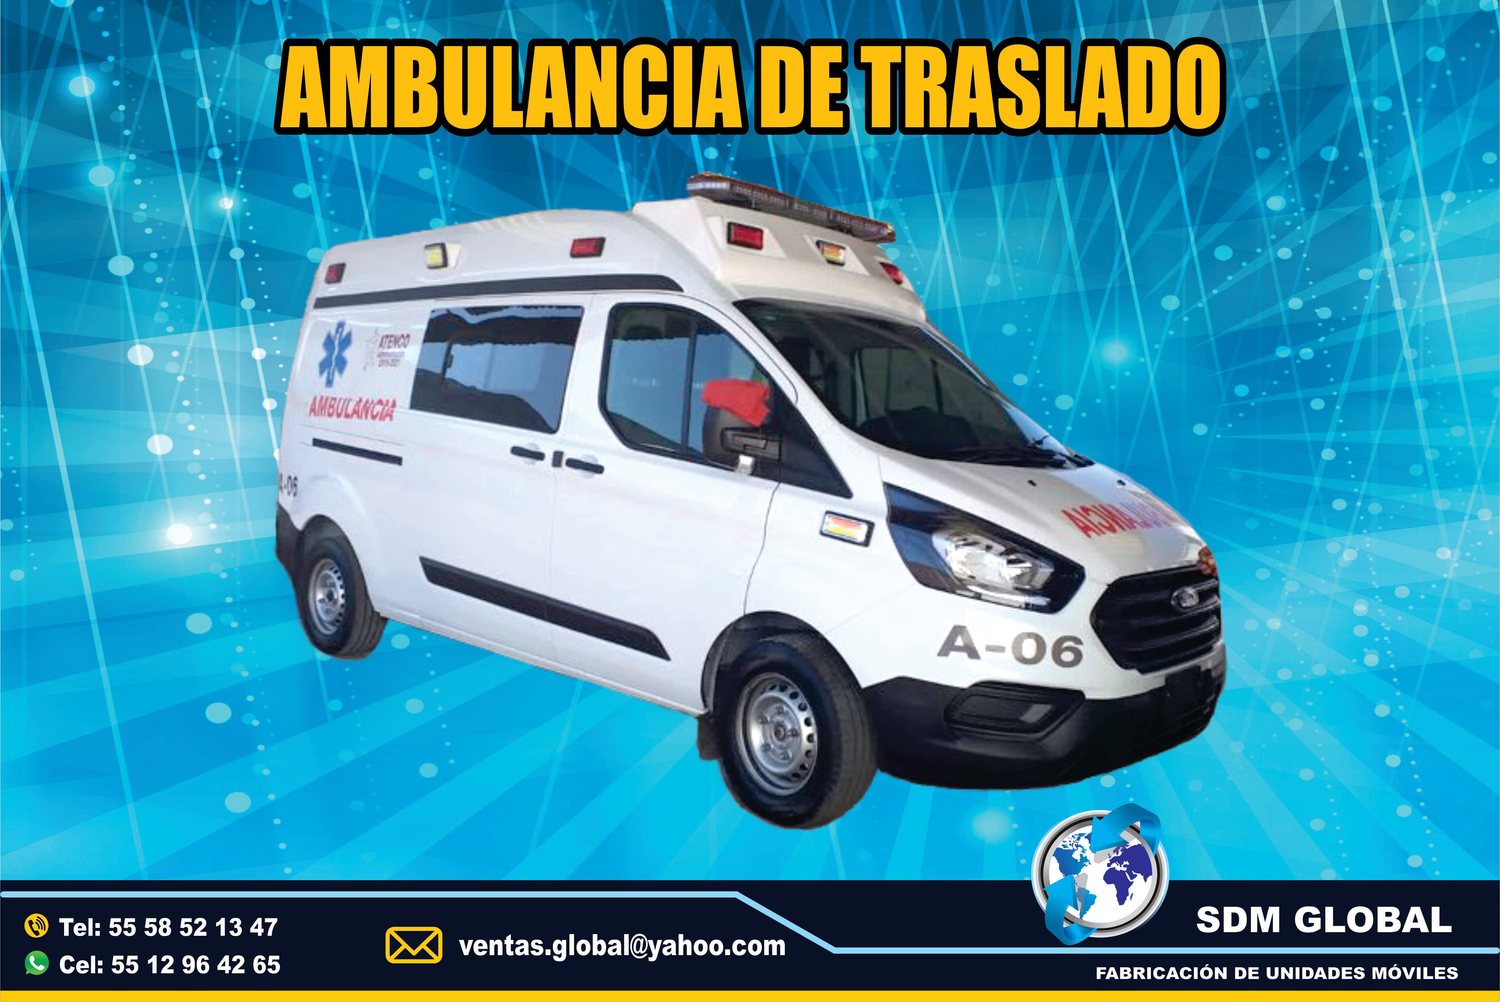 <span style="font-weight: bold;">Fabricantes de  Ambulancis de Traslado en Mexico</span>